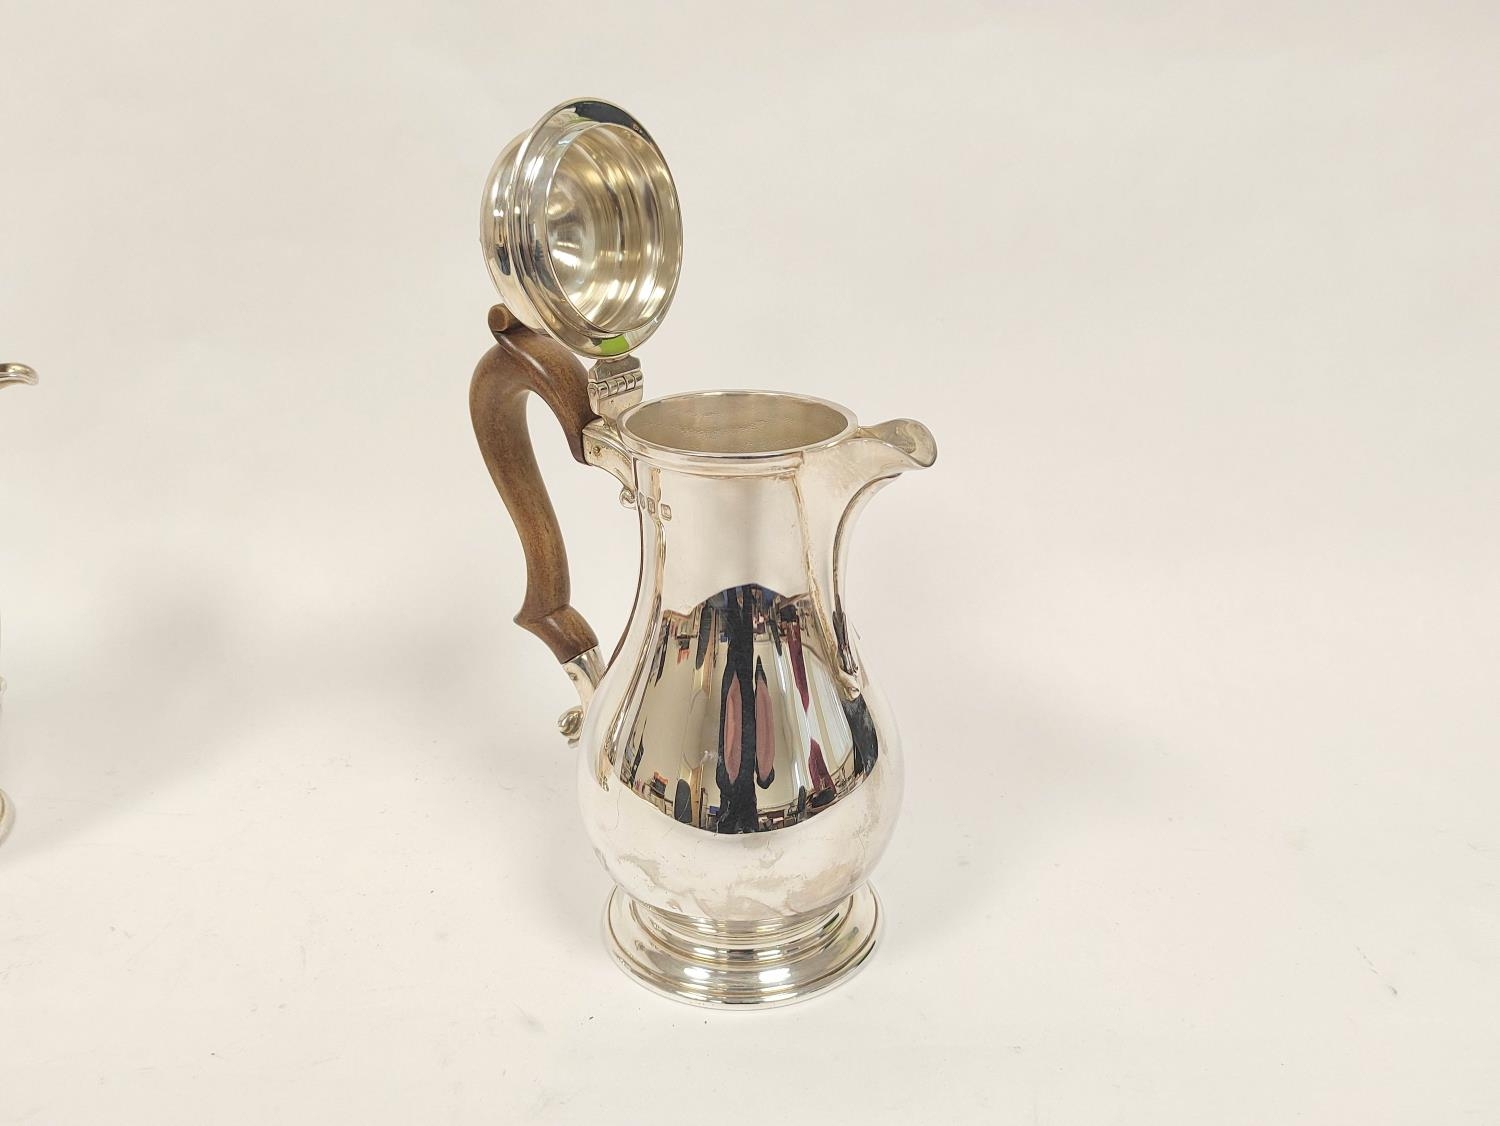 Pair of silver café au lait pots of Georgian baluster shape by Hamilton & Inches, Edinburgh 1966, - Image 2 of 5